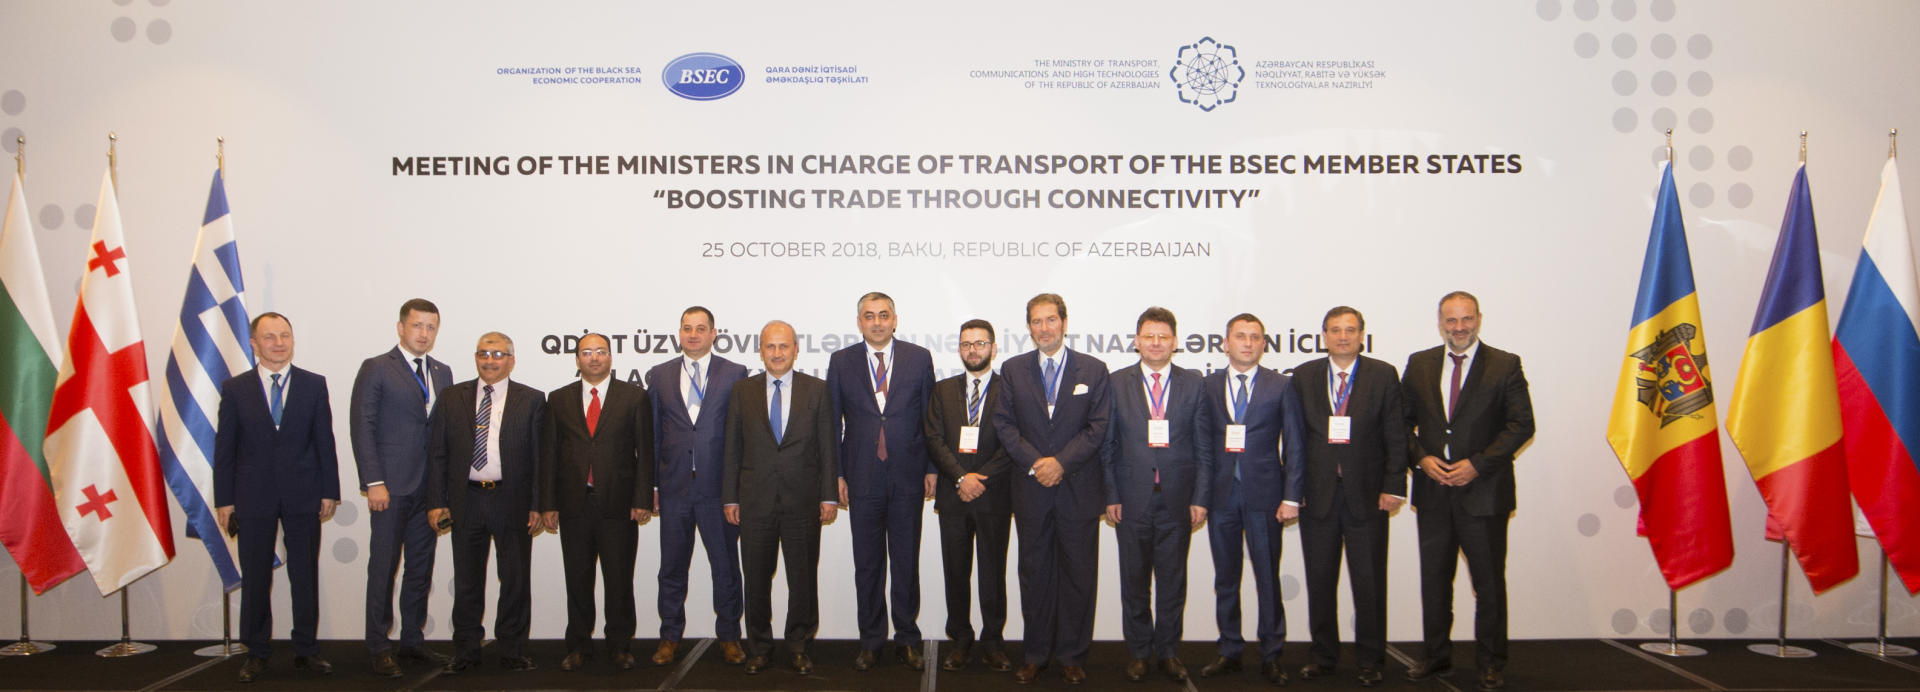 Рамин Гулузаде: Азербайджан увеличит мультимодальные перевозки в регионе Каспийского моря (ФОТО)